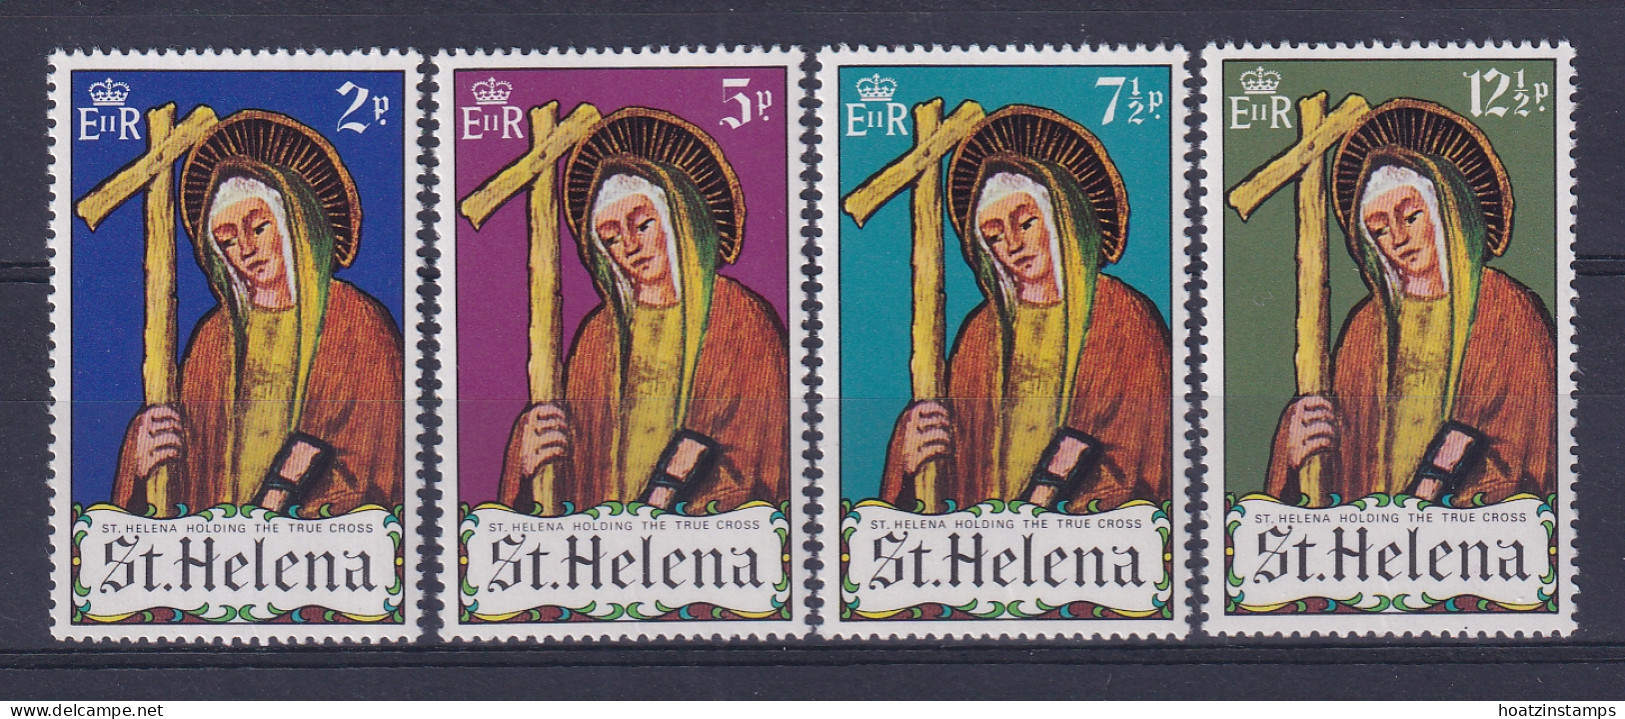 St Helena: 1971   Easter    MNH - Saint Helena Island